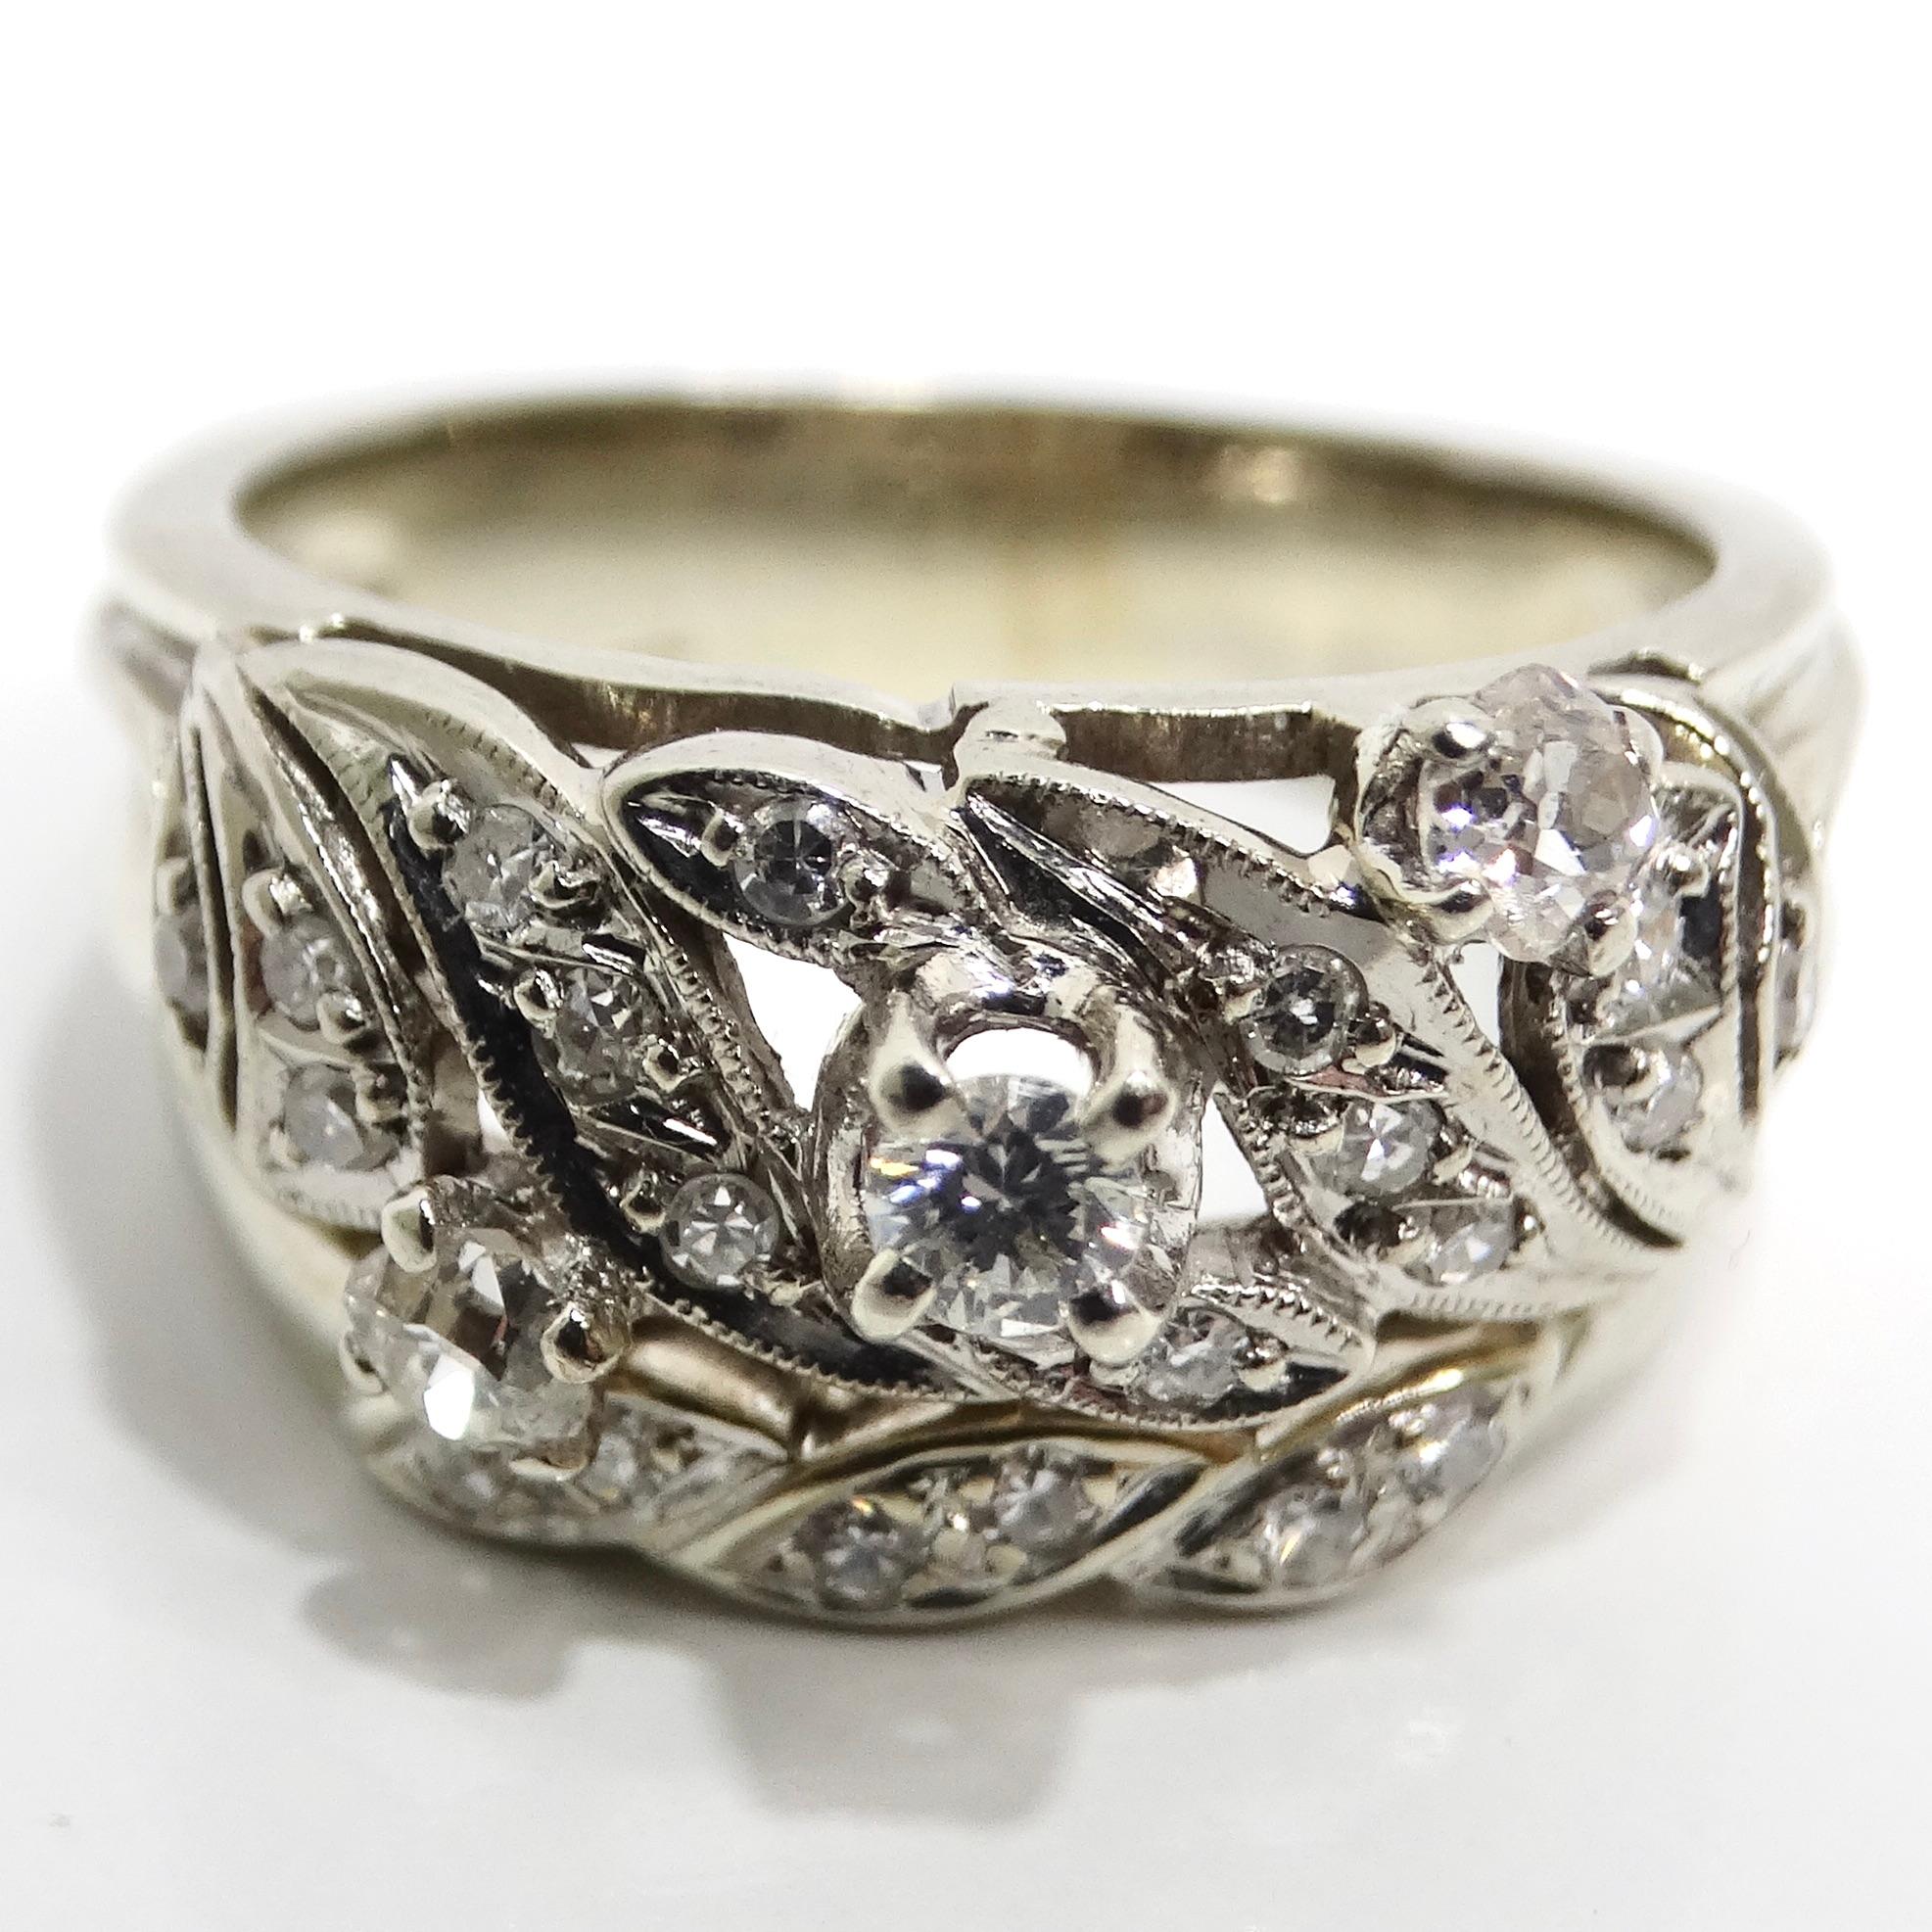 Tauchen Sie ein in die zeitlose Eleganz der 1920er Jahre mit dem French Art Deco Diamond Cocktail Ring, einem klassischen Stück, das Raffinesse und Geschichte ausstrahlt. Dieser aus Platin gefertigte Cocktailring zeichnet sich durch eine skurrile